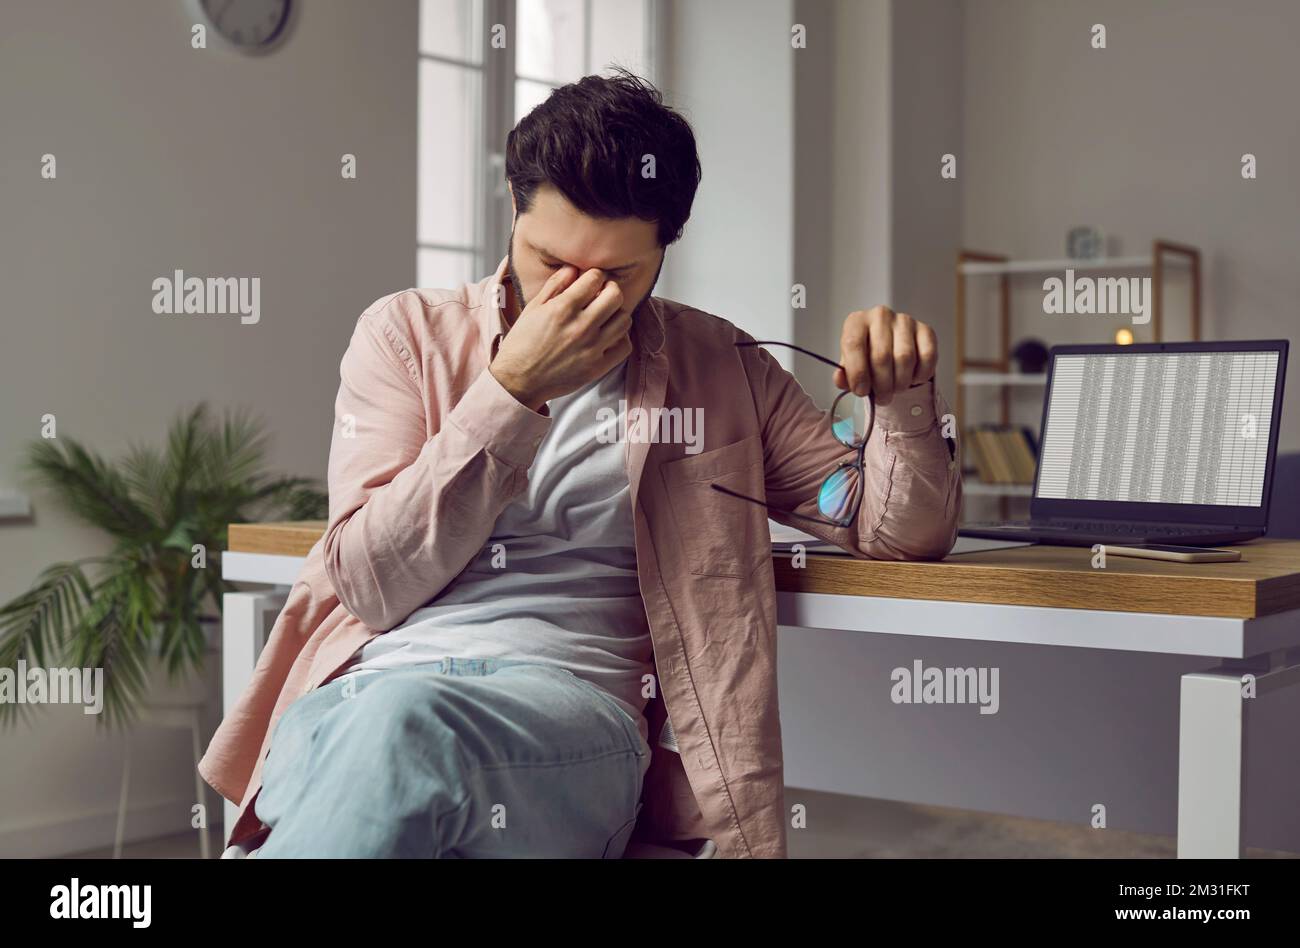 Müder, gestresster Mann mit anstrengenden Augen, der mit einem Laptop am Schreibtisch sitzt Stockfoto